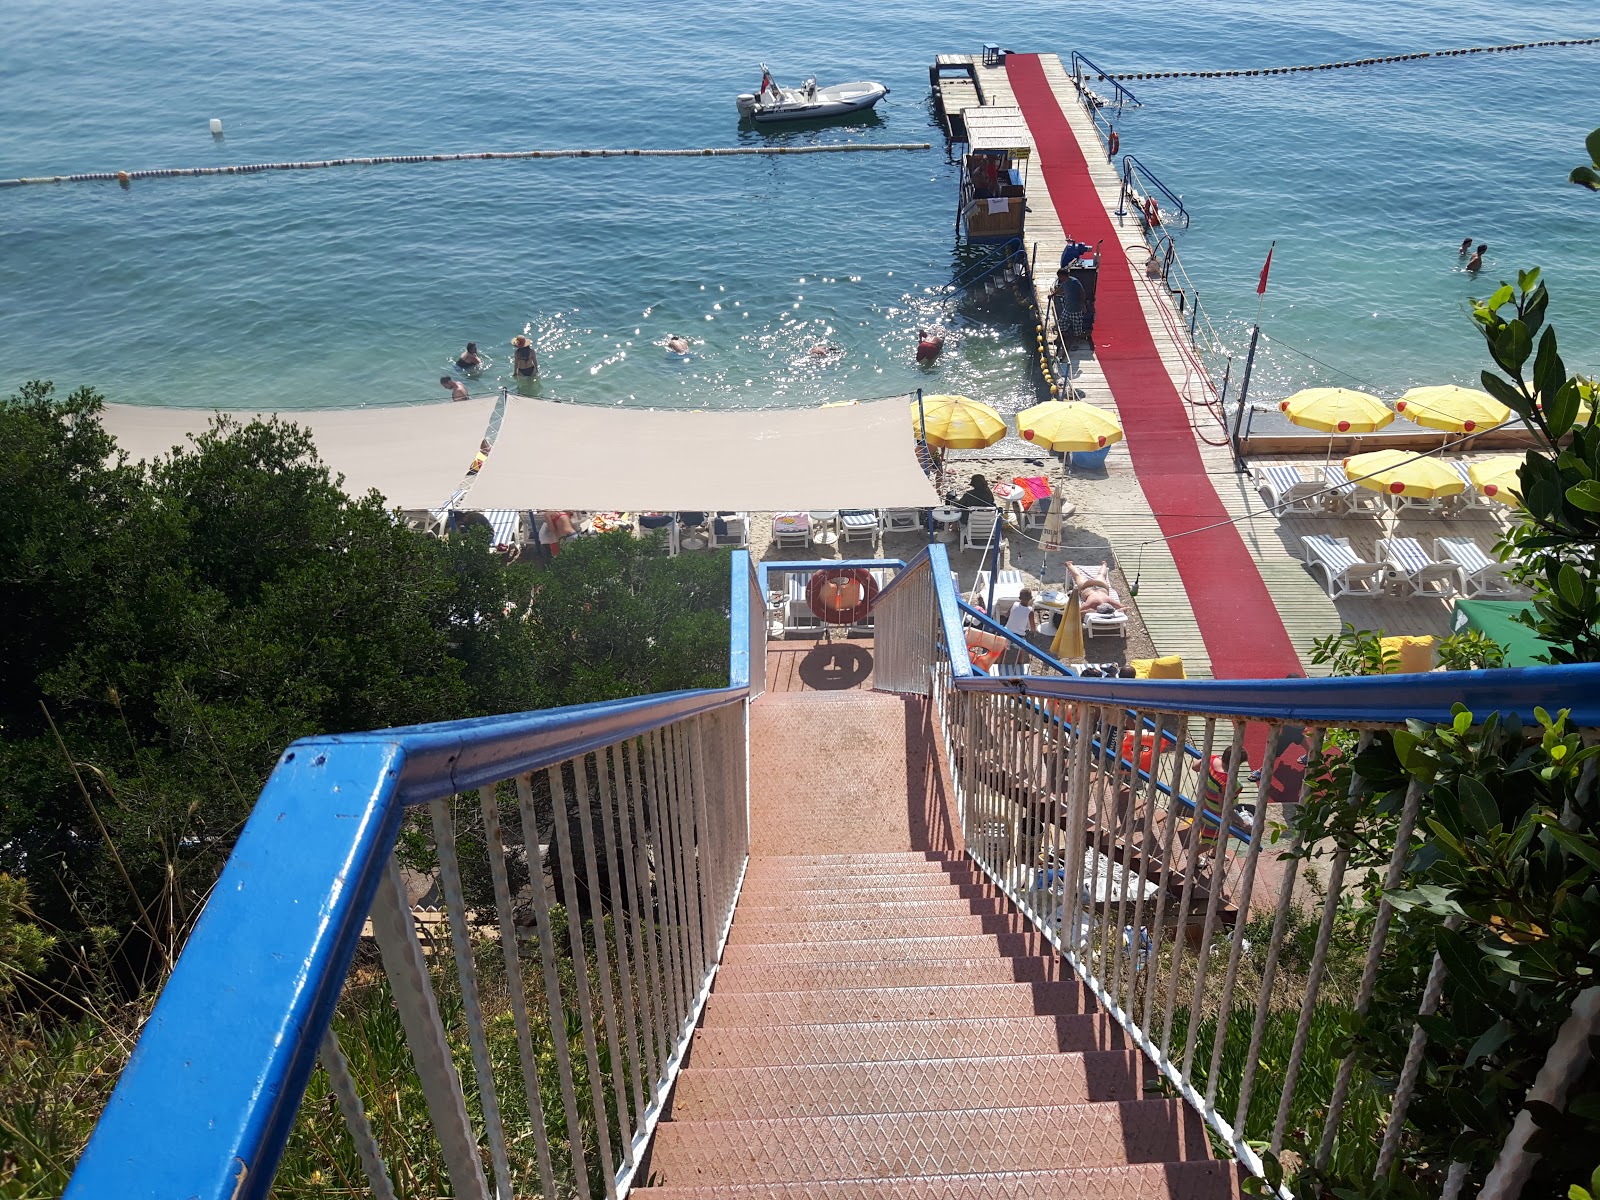 Foto af Halik Koyu Aile Plaji - populært sted blandt afslapningskendere